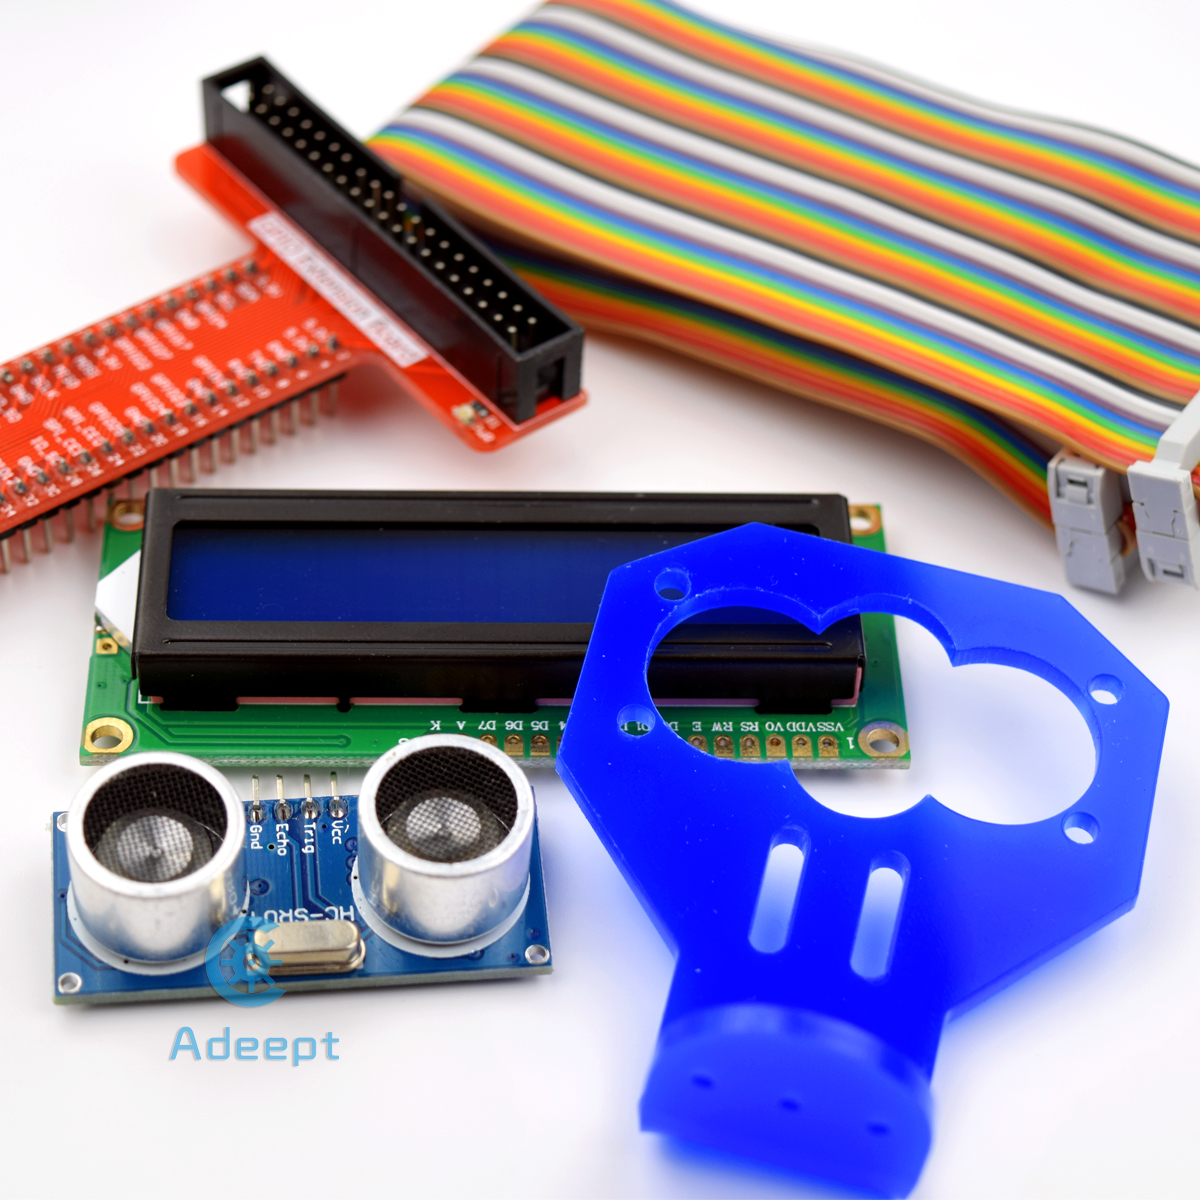 Adeept Ultrasonic Distance Sensor Starter kit for Raspberry Pi - Click to Enlarge